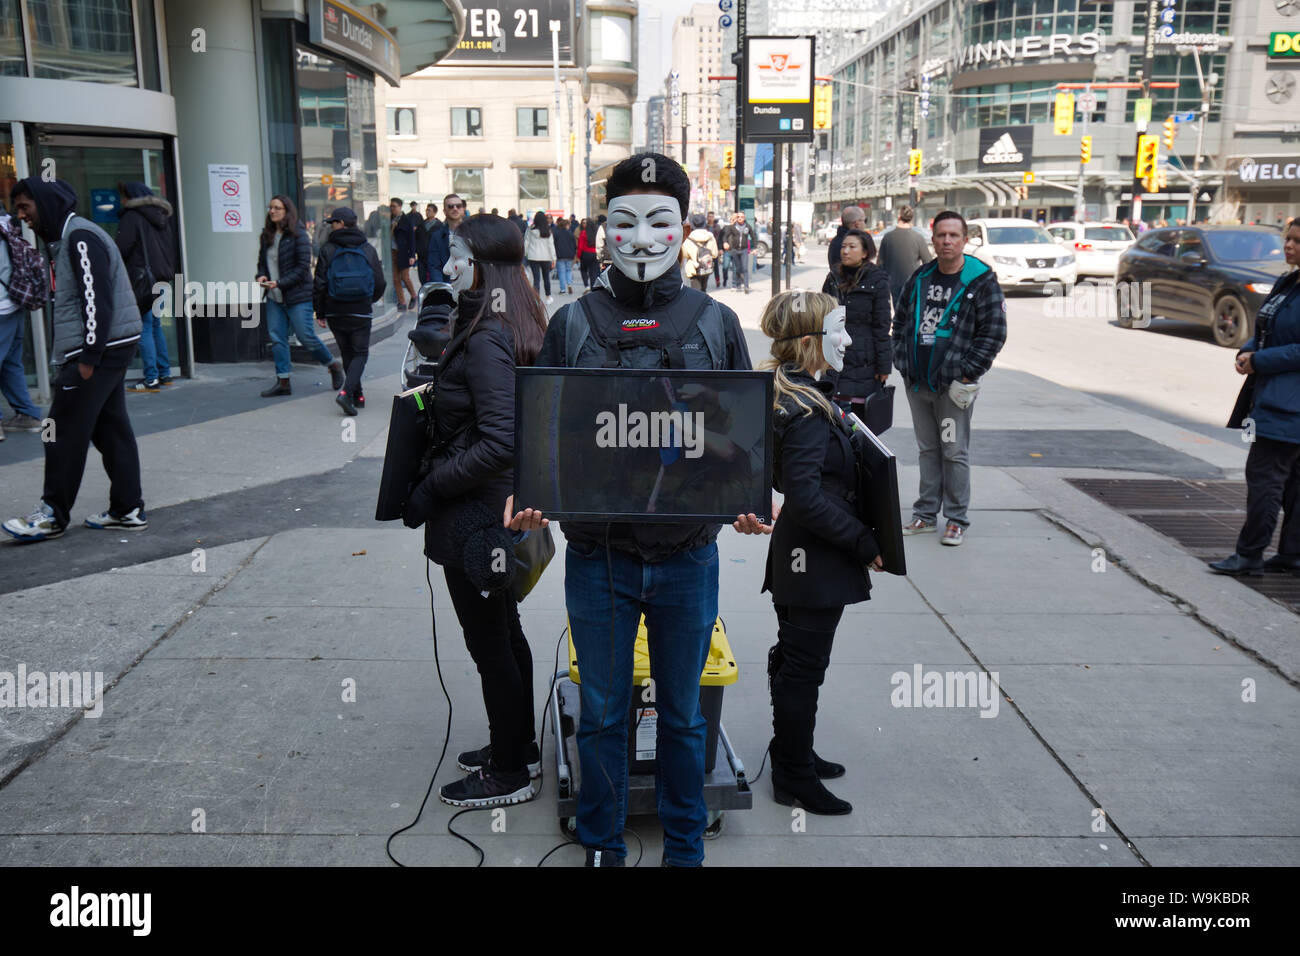 Toronto, Ontario, Canada, 2019 Mars-20 : protestation contre la cruauté envers les animaux par un groupe de jeunes militants portant des masques anonymes et la tenue d'un téléviseur qui Banque D'Images